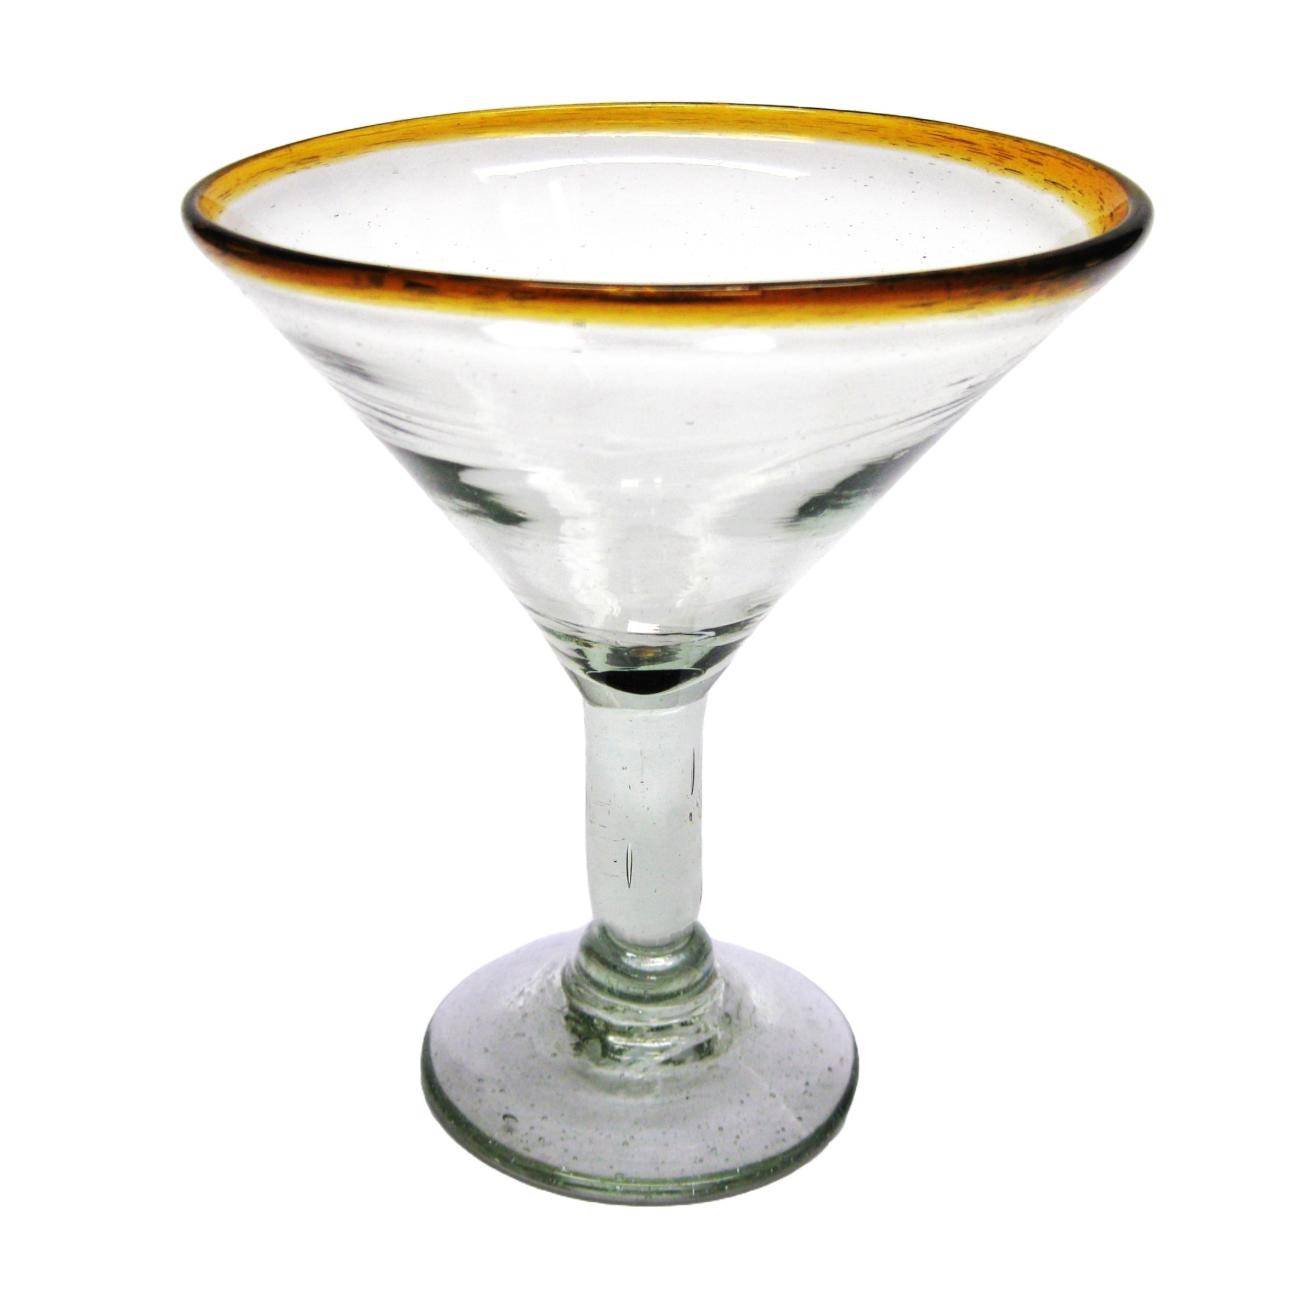 Copas para Margarita / Juego de 6 copas para martini con borde color mbar / ste hermoso juego de copas para martini le dar un toque clsico mexicano a sus fiestas.